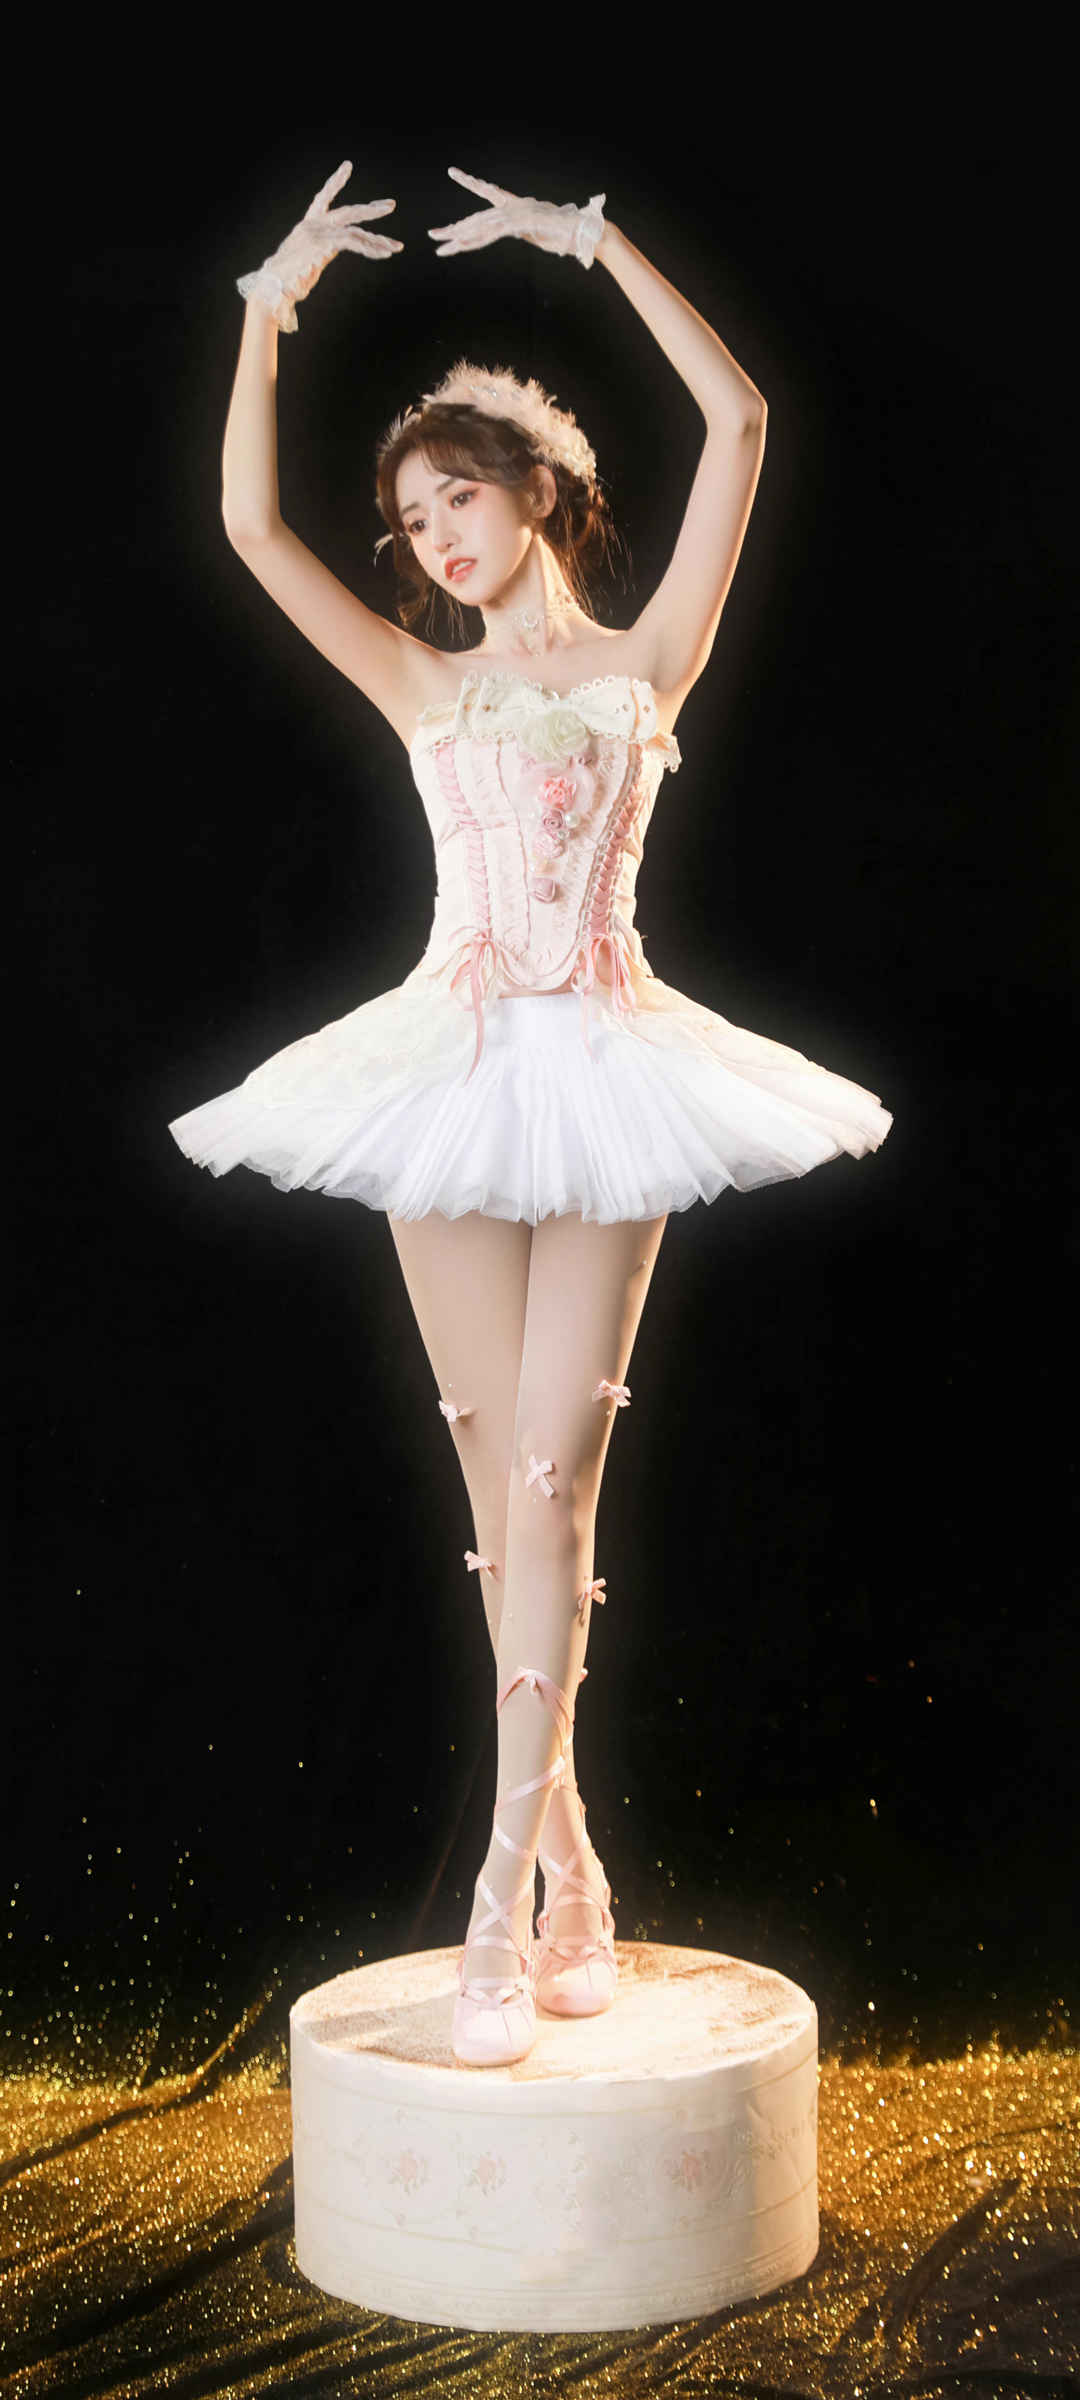 好看身材美腿美女 唯美 芭蕾舞 手机壁纸-